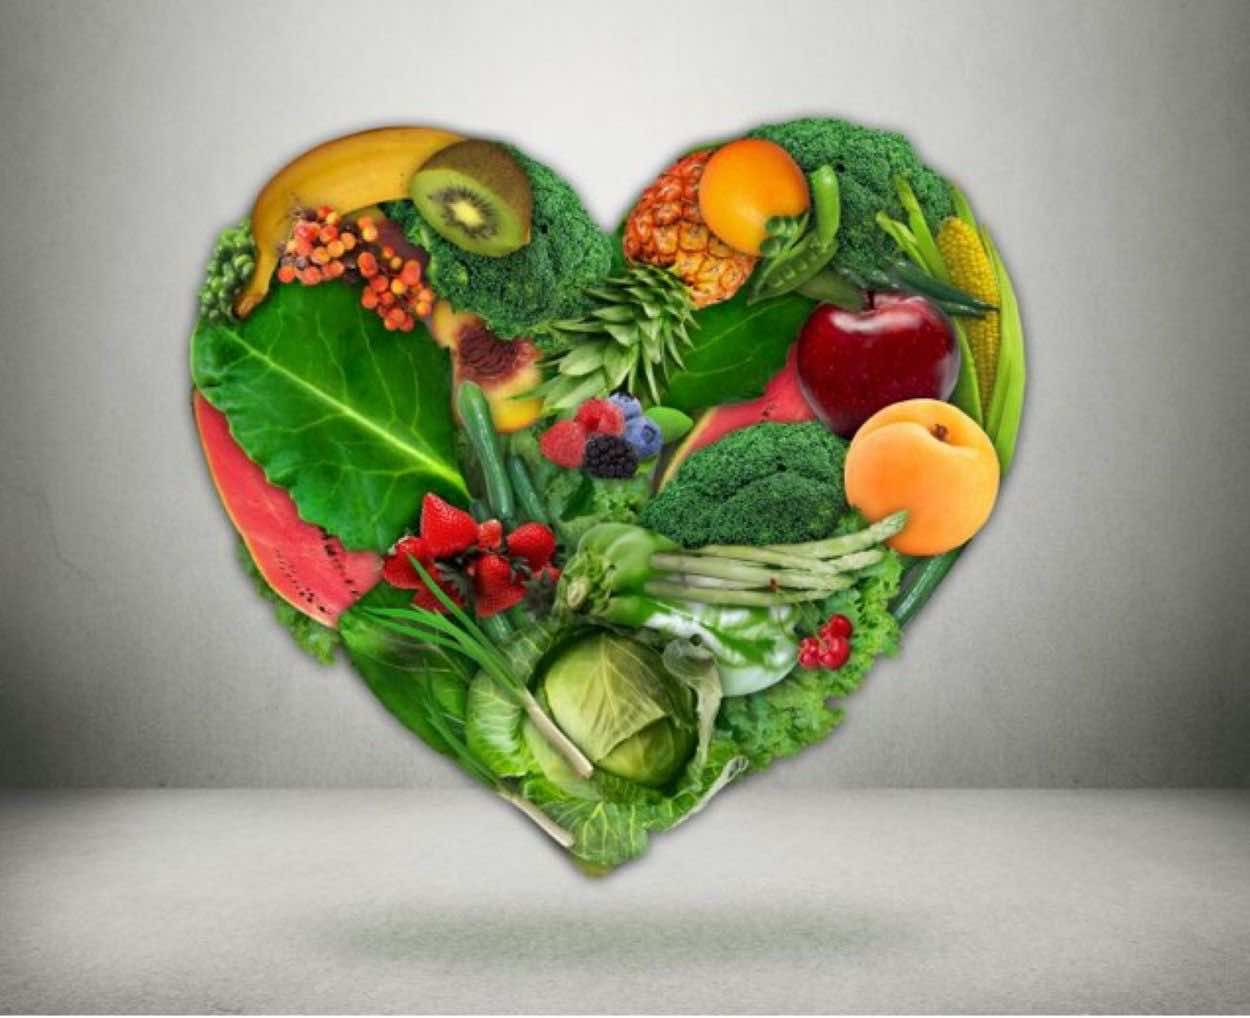 ميديتيرينيان دايت: الحمية الغذائية التي تحفظ صحة القلب و الأوعية الدموية..